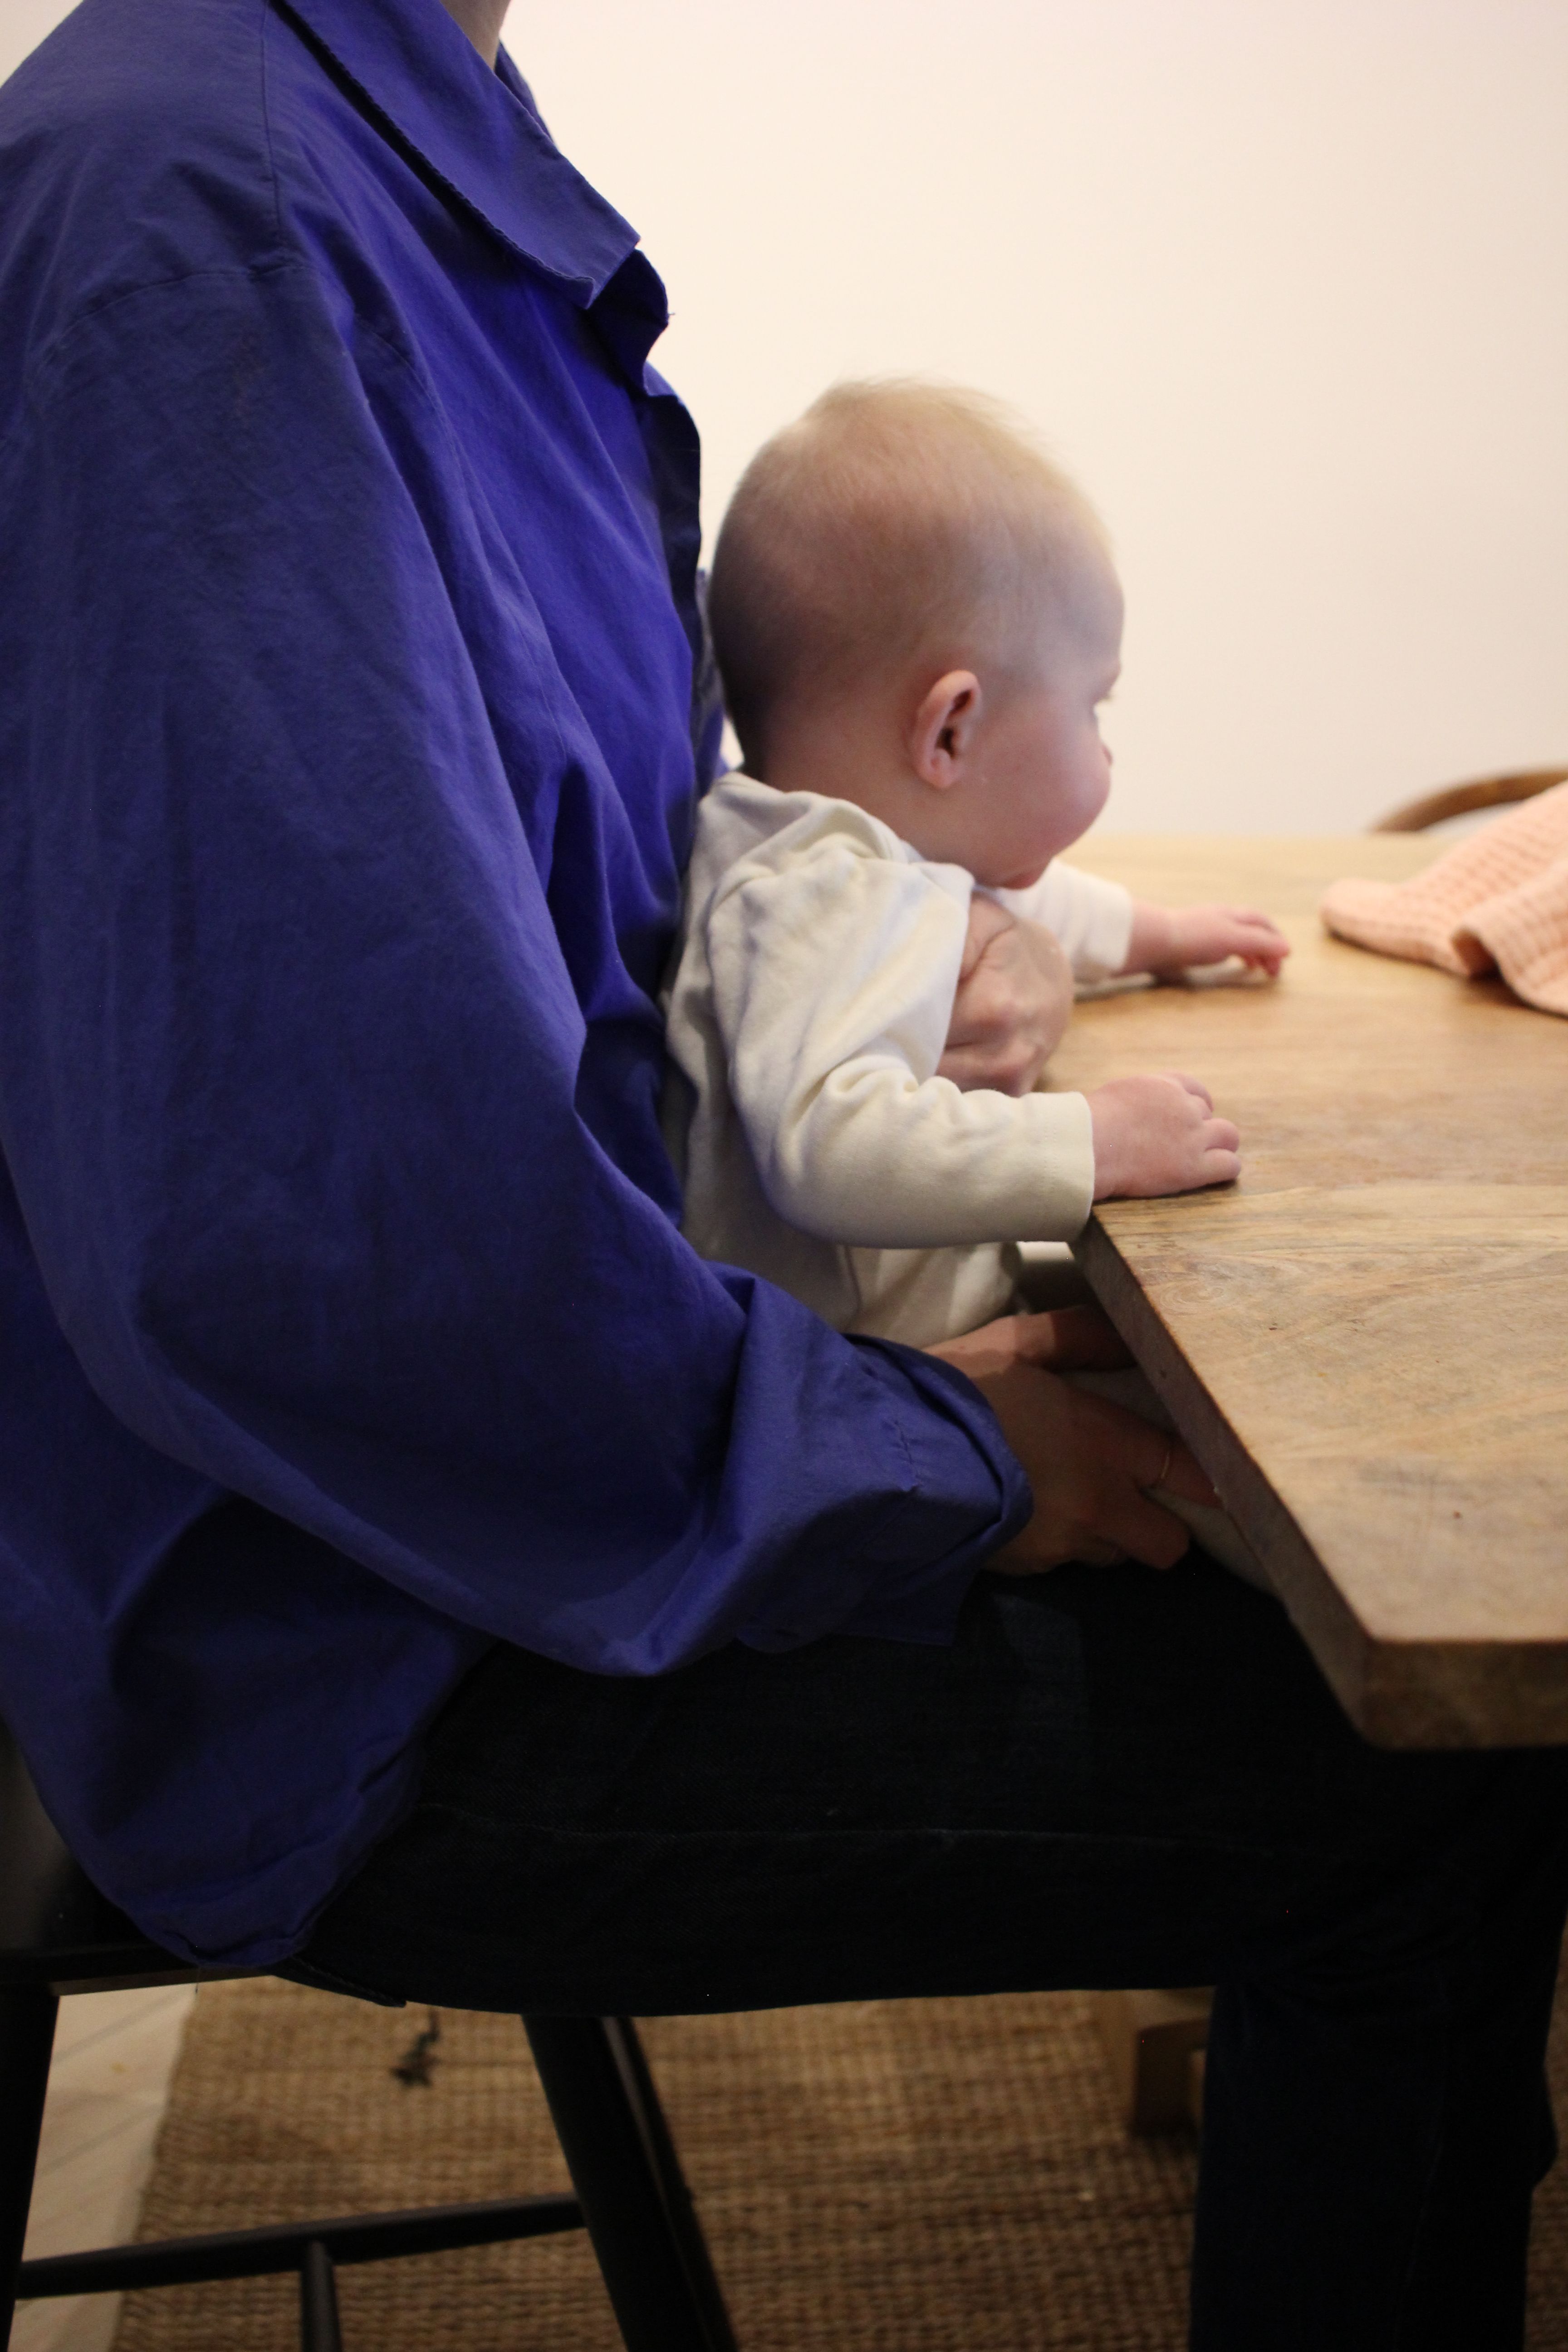 Bebis sitter nära bordet och högt så att det är lätt att sträcka armarna och nå maten